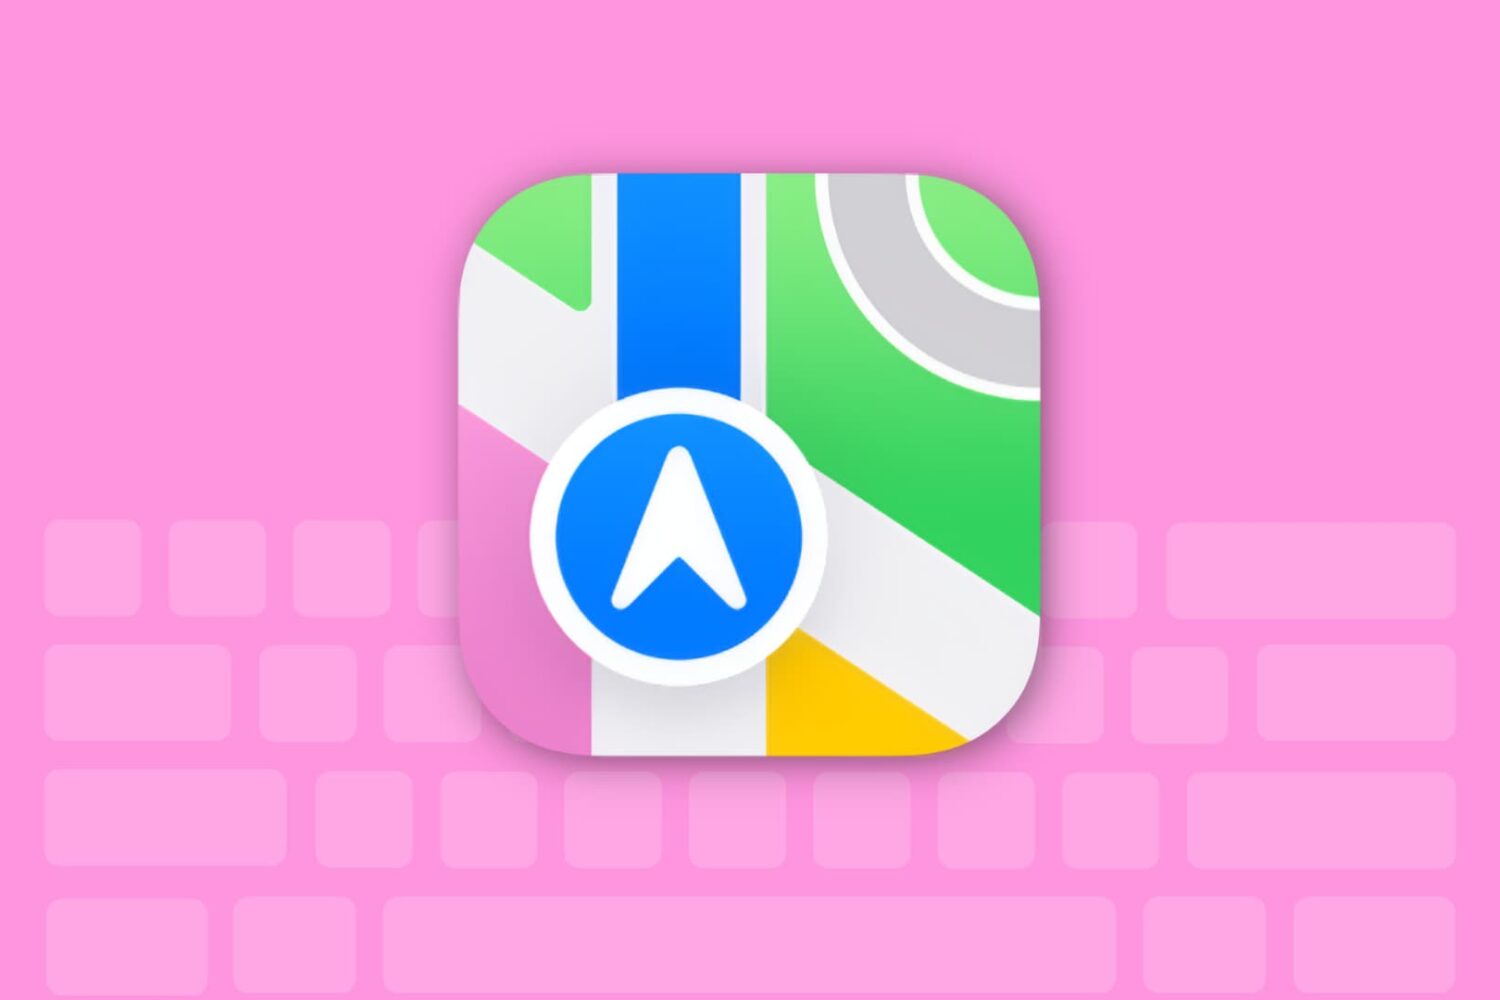 Apple Maps app keyboard shortcuts